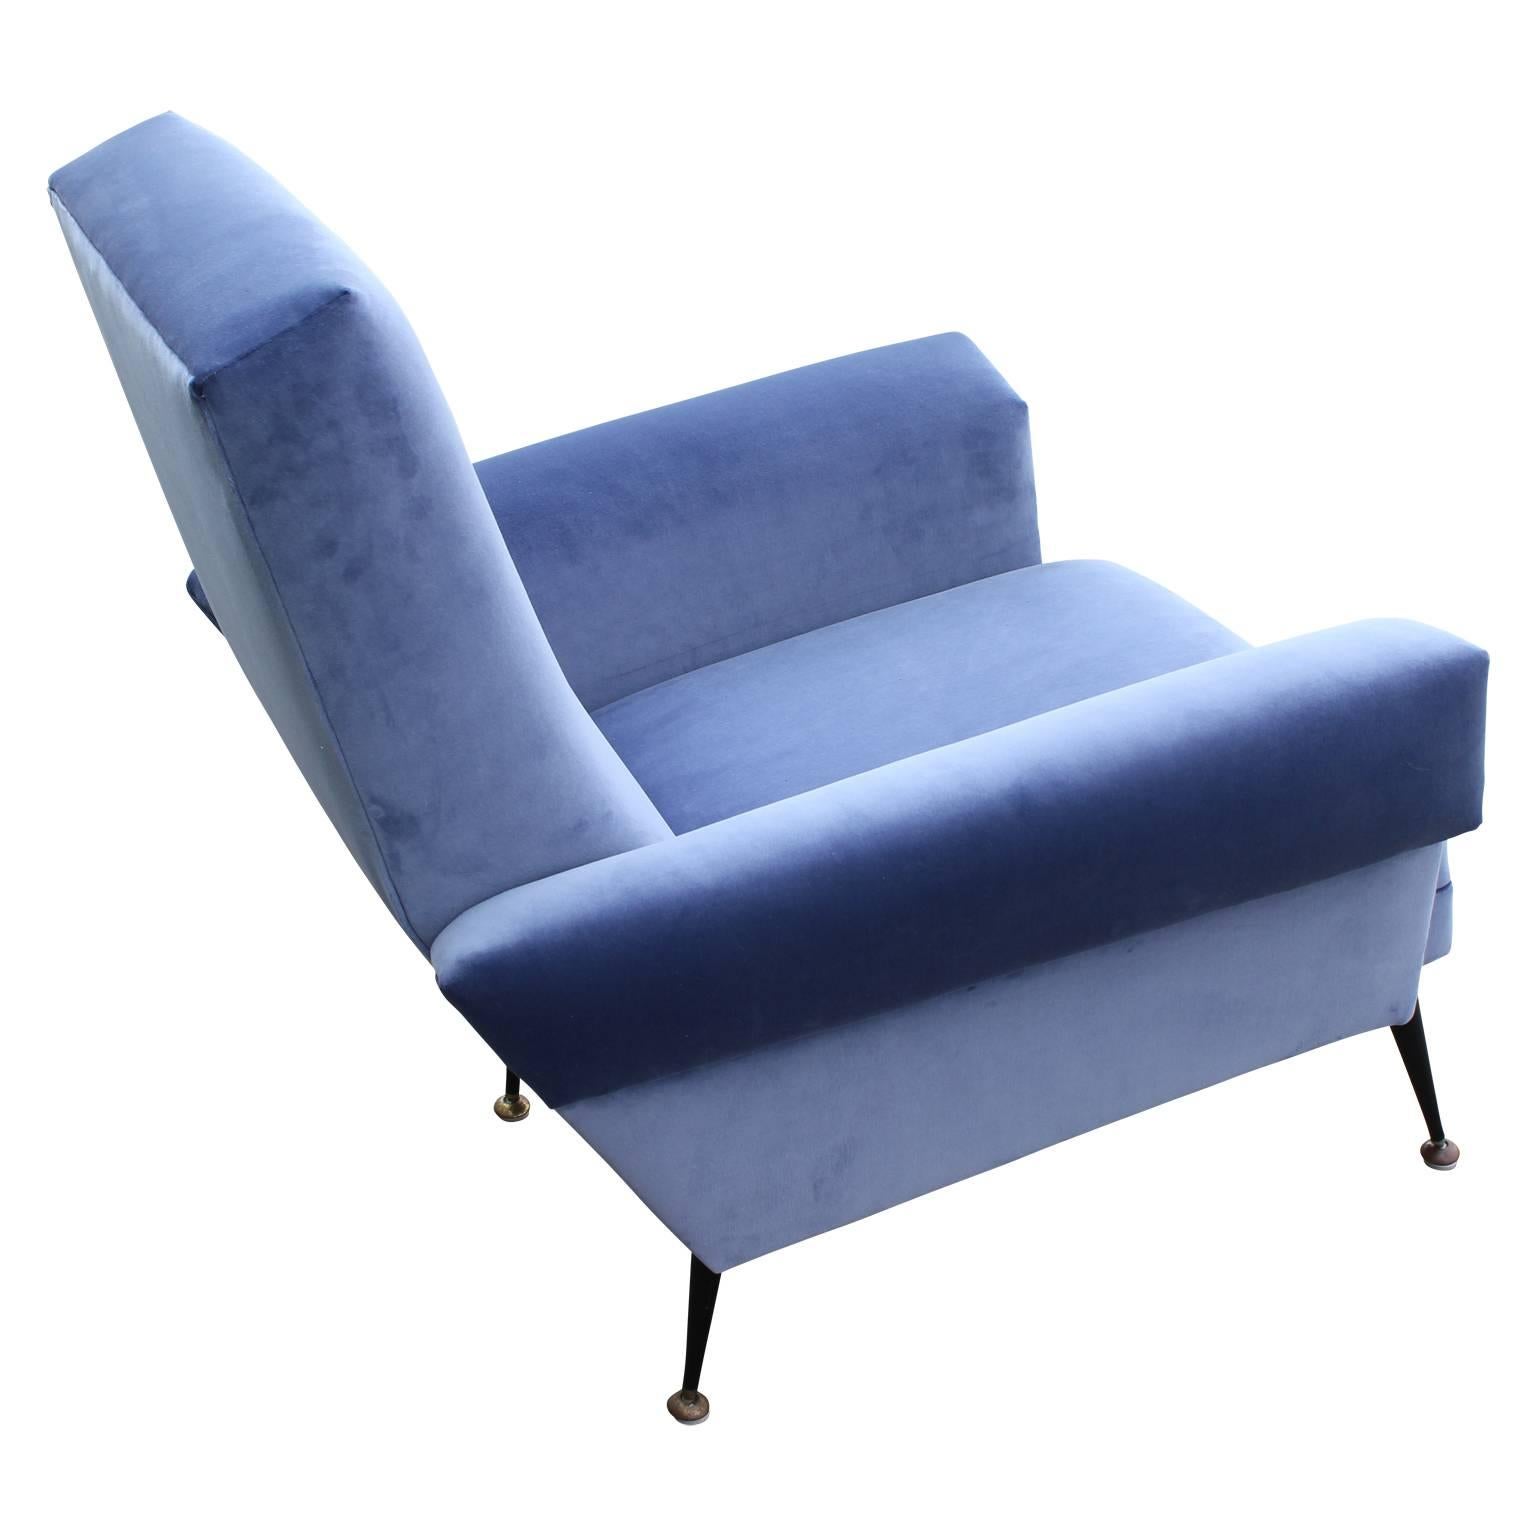 Pair of Modern Arflex Style Italian Lounge Chairs in Blue Kravet Velvet 2